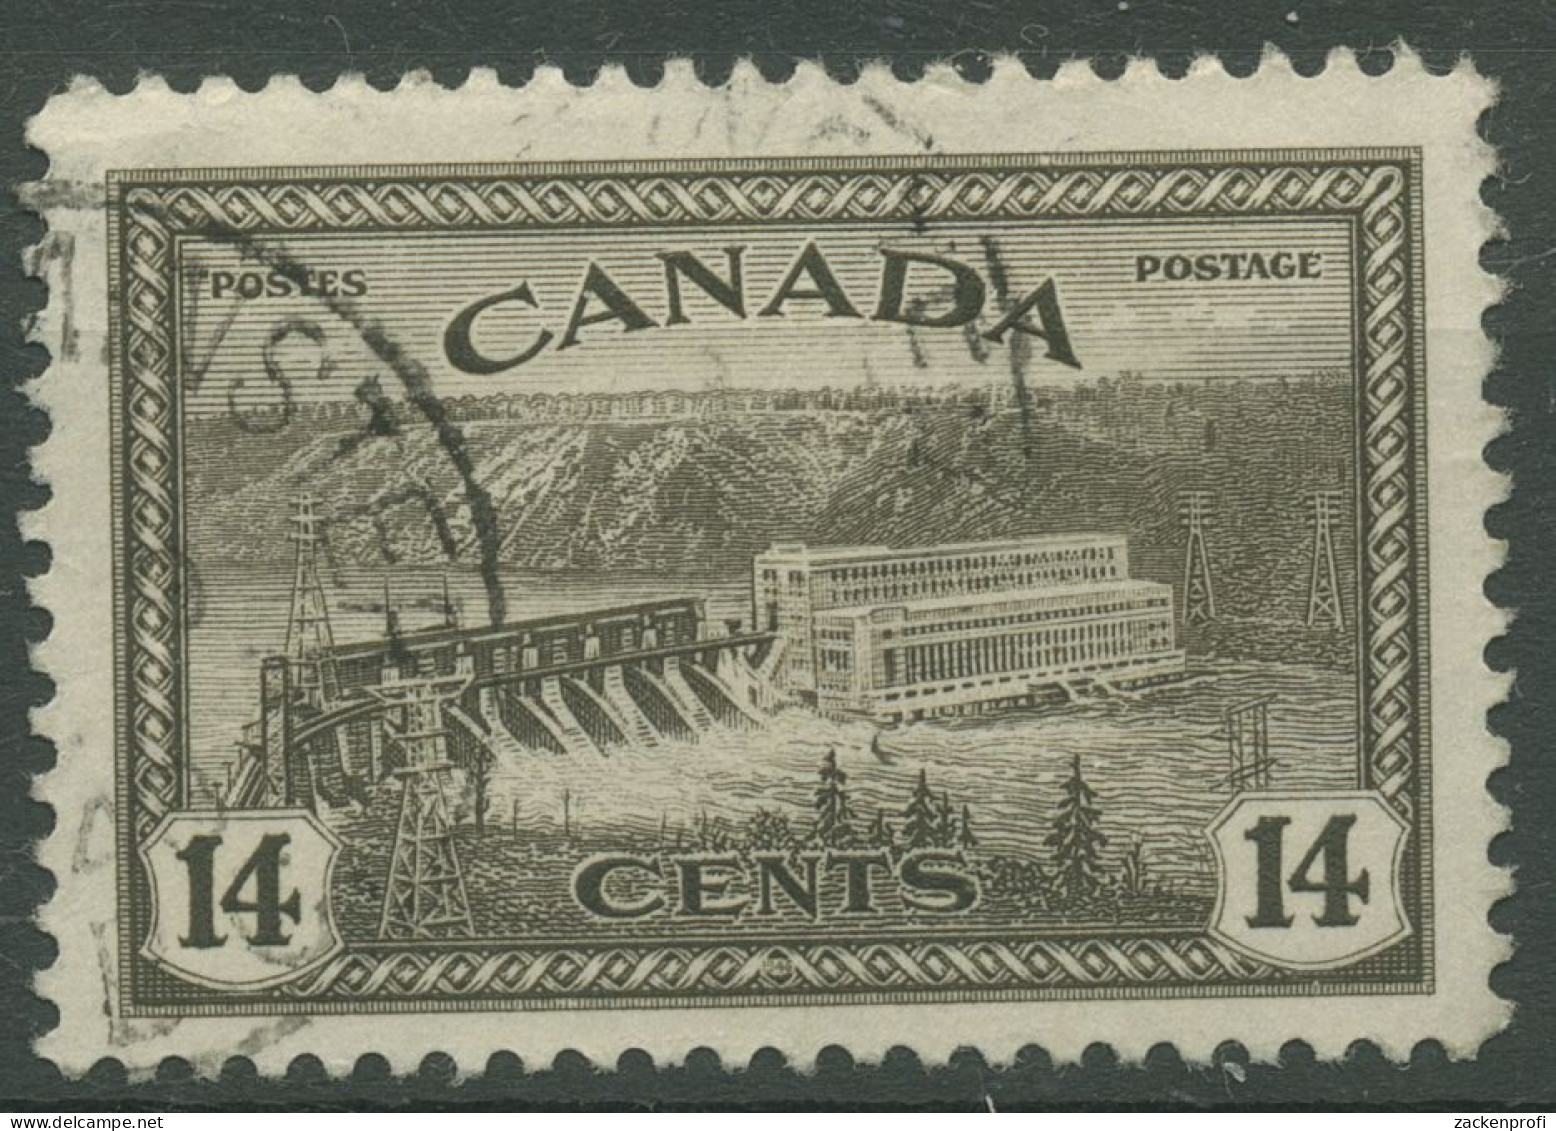 Kanada 1946 Umstellung Auf Friedensproduktion Wasserkraftwerk 237 Gestempelt - Used Stamps